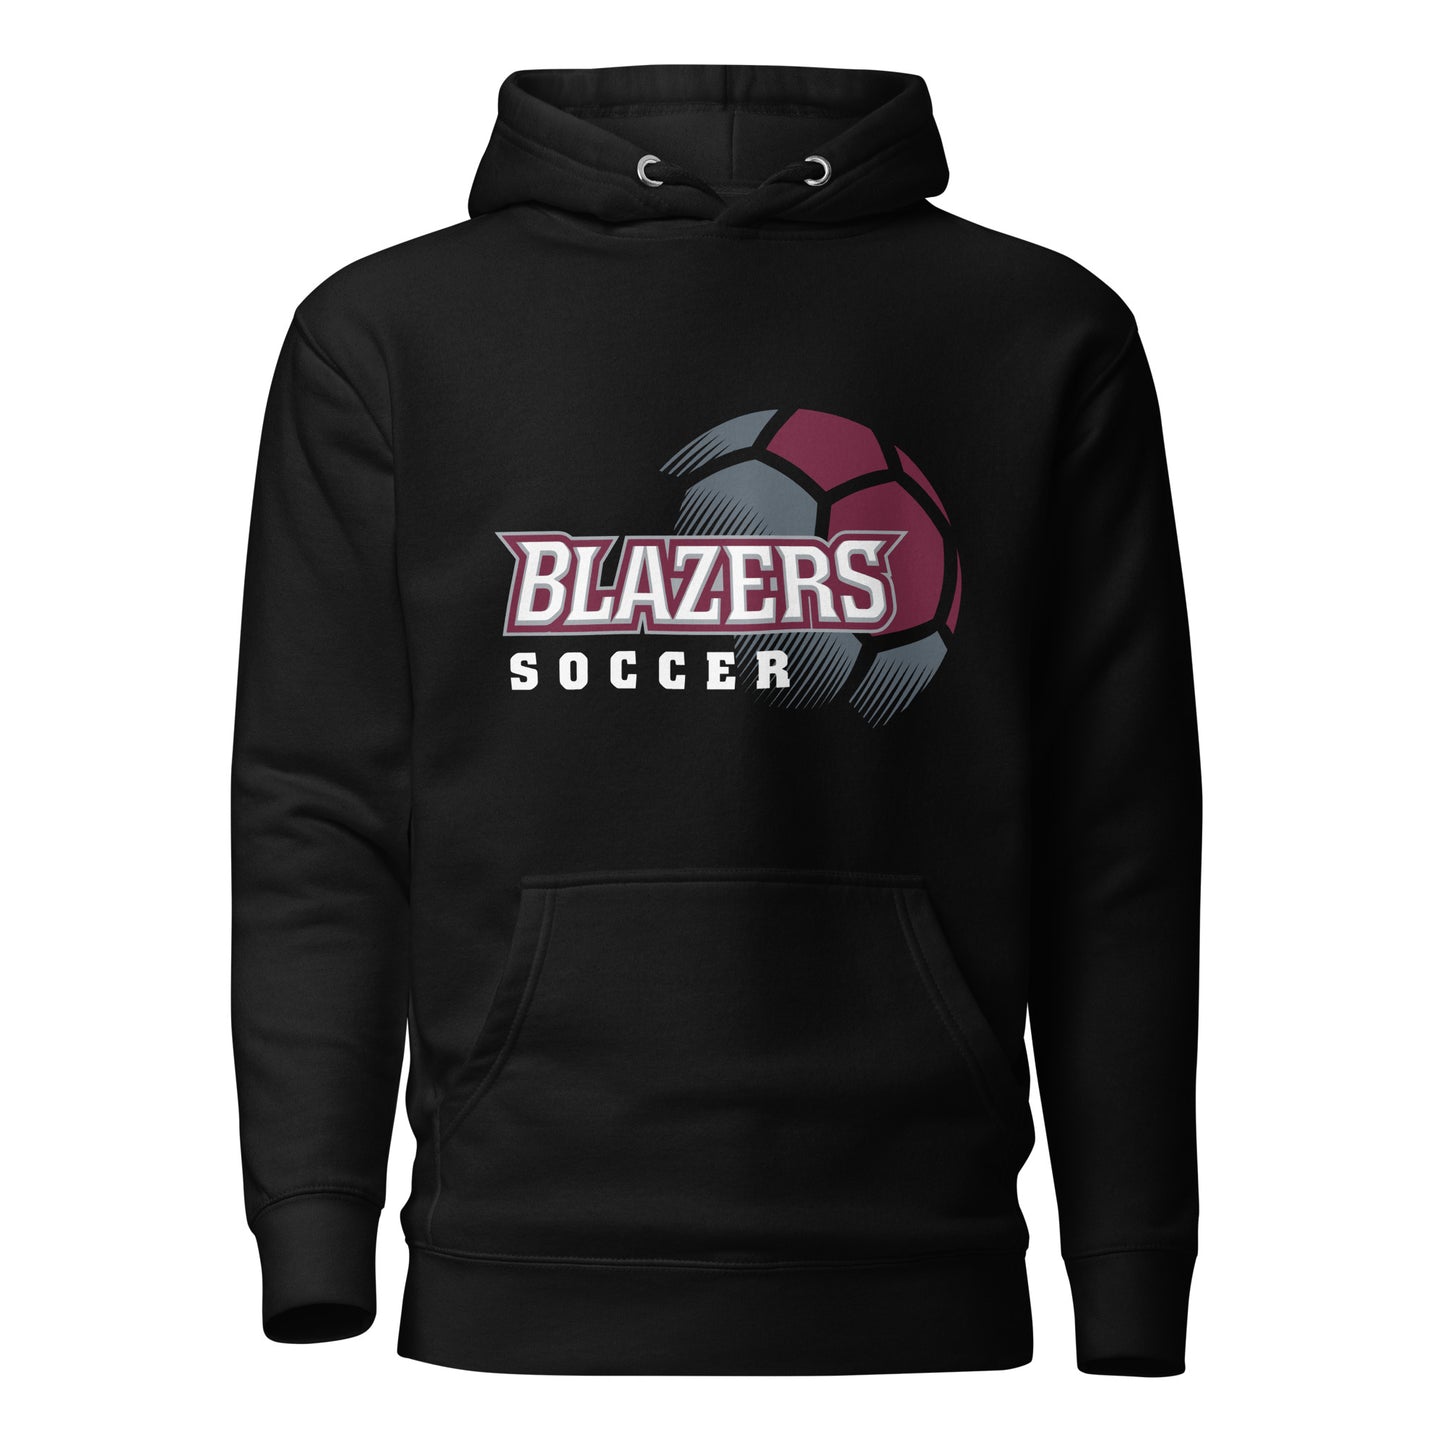 Blazers Soccer Unisex Hoodie